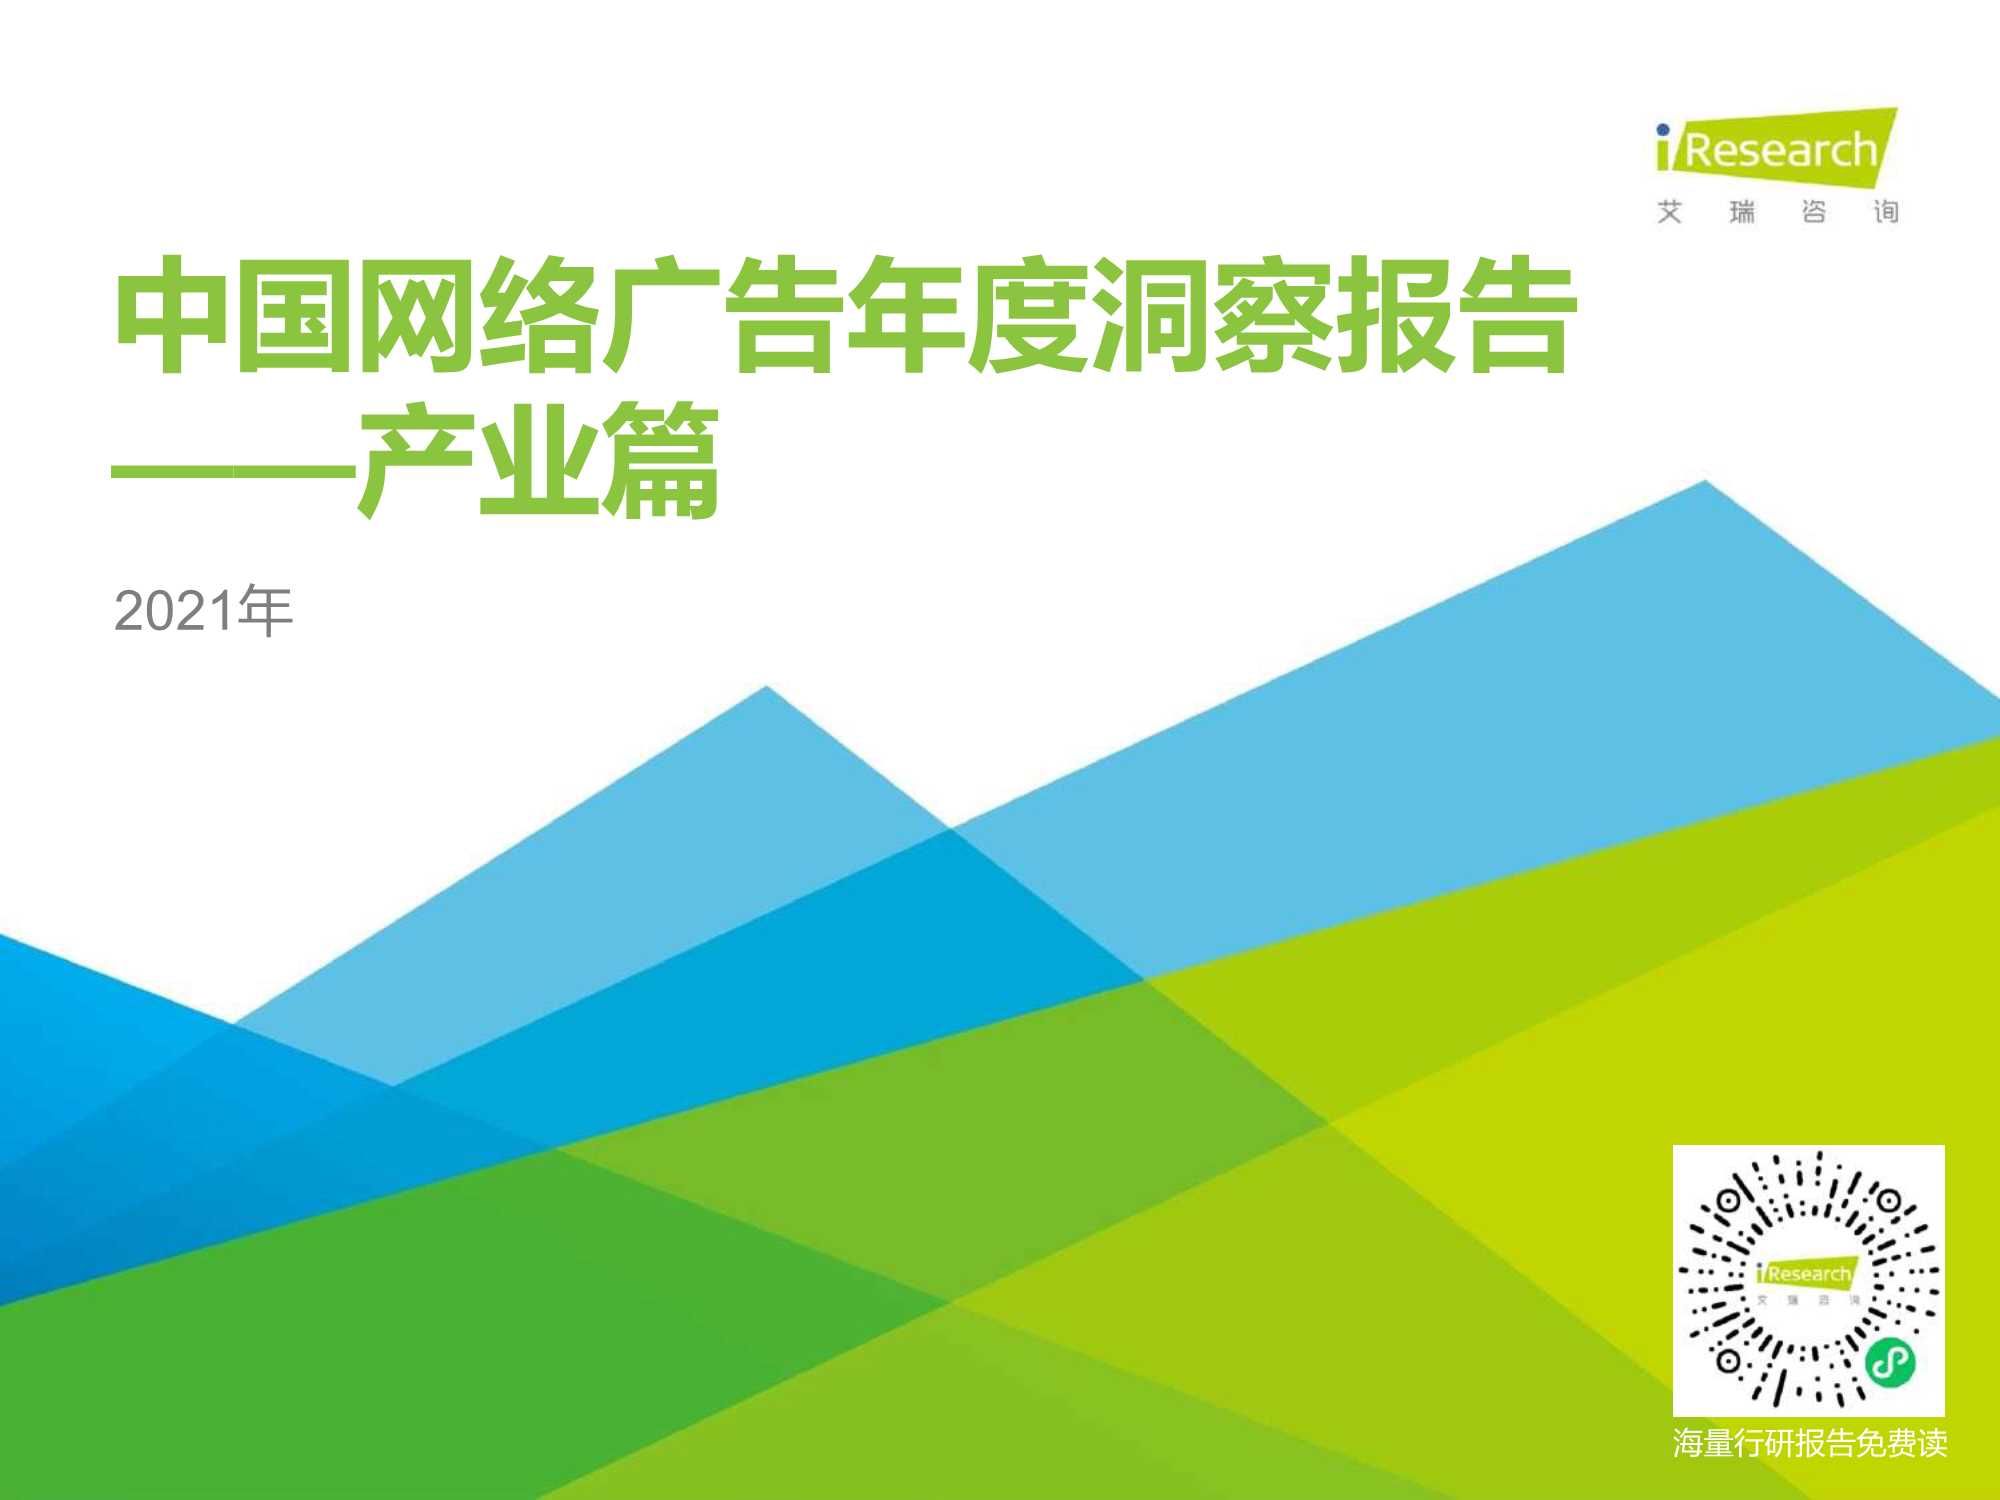 艾瑞咨询-2021年中国网络广告年度洞察报告-产业篇-2021.09-92页